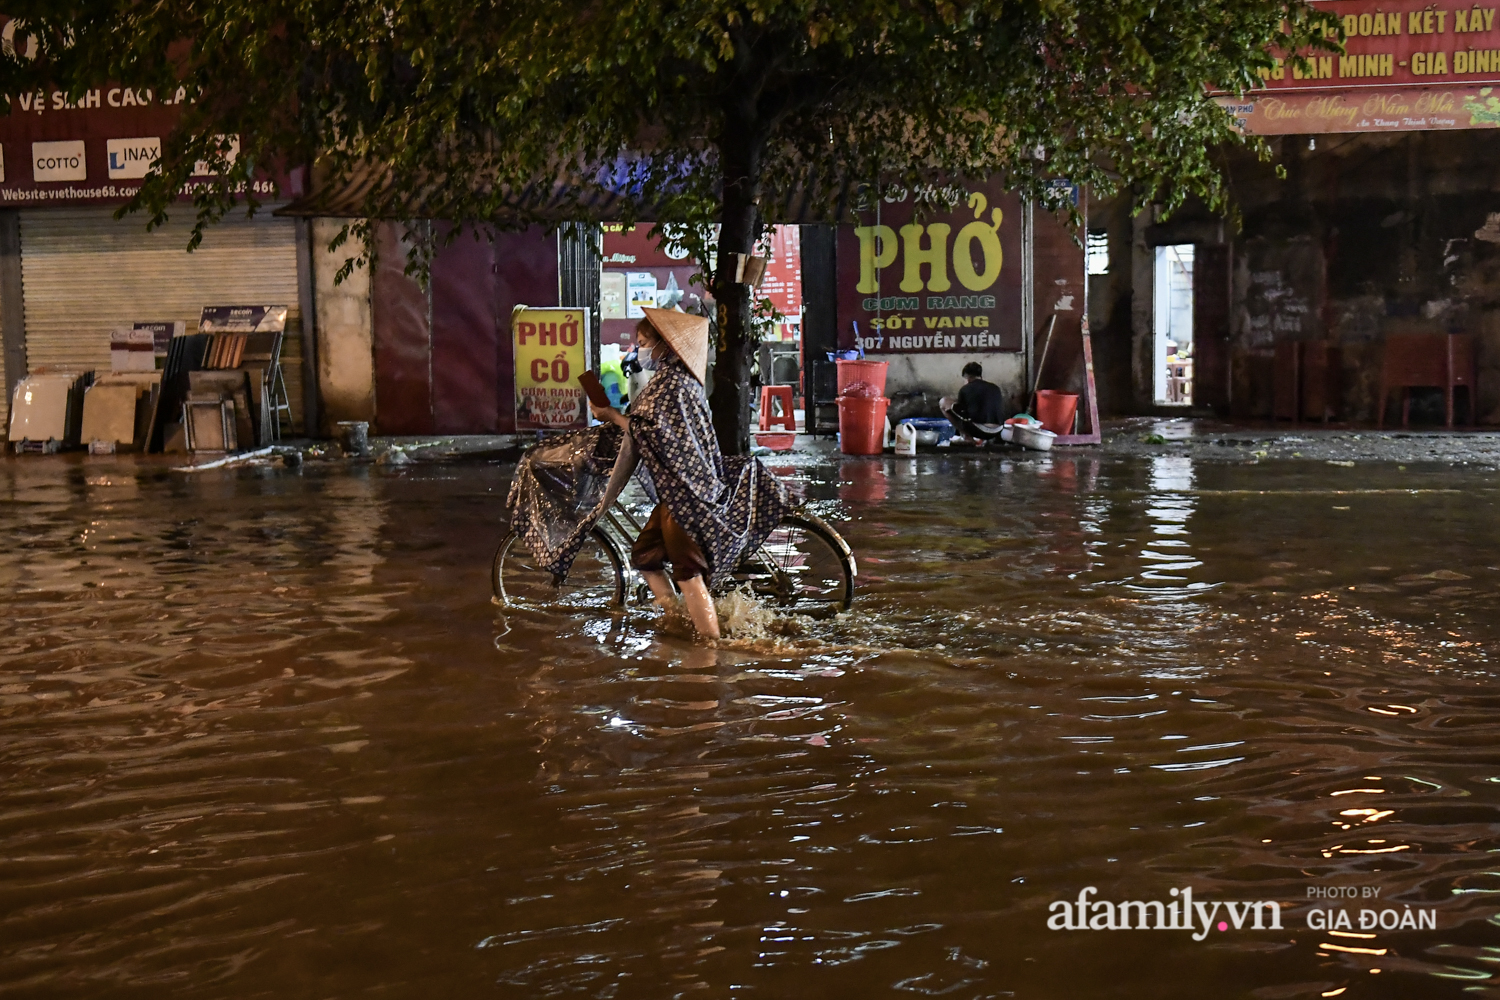 Mưa lớn chưa đầy 1 giờ đồng hồ, đường phố Hà Nội ngập như sông - Ảnh 3.